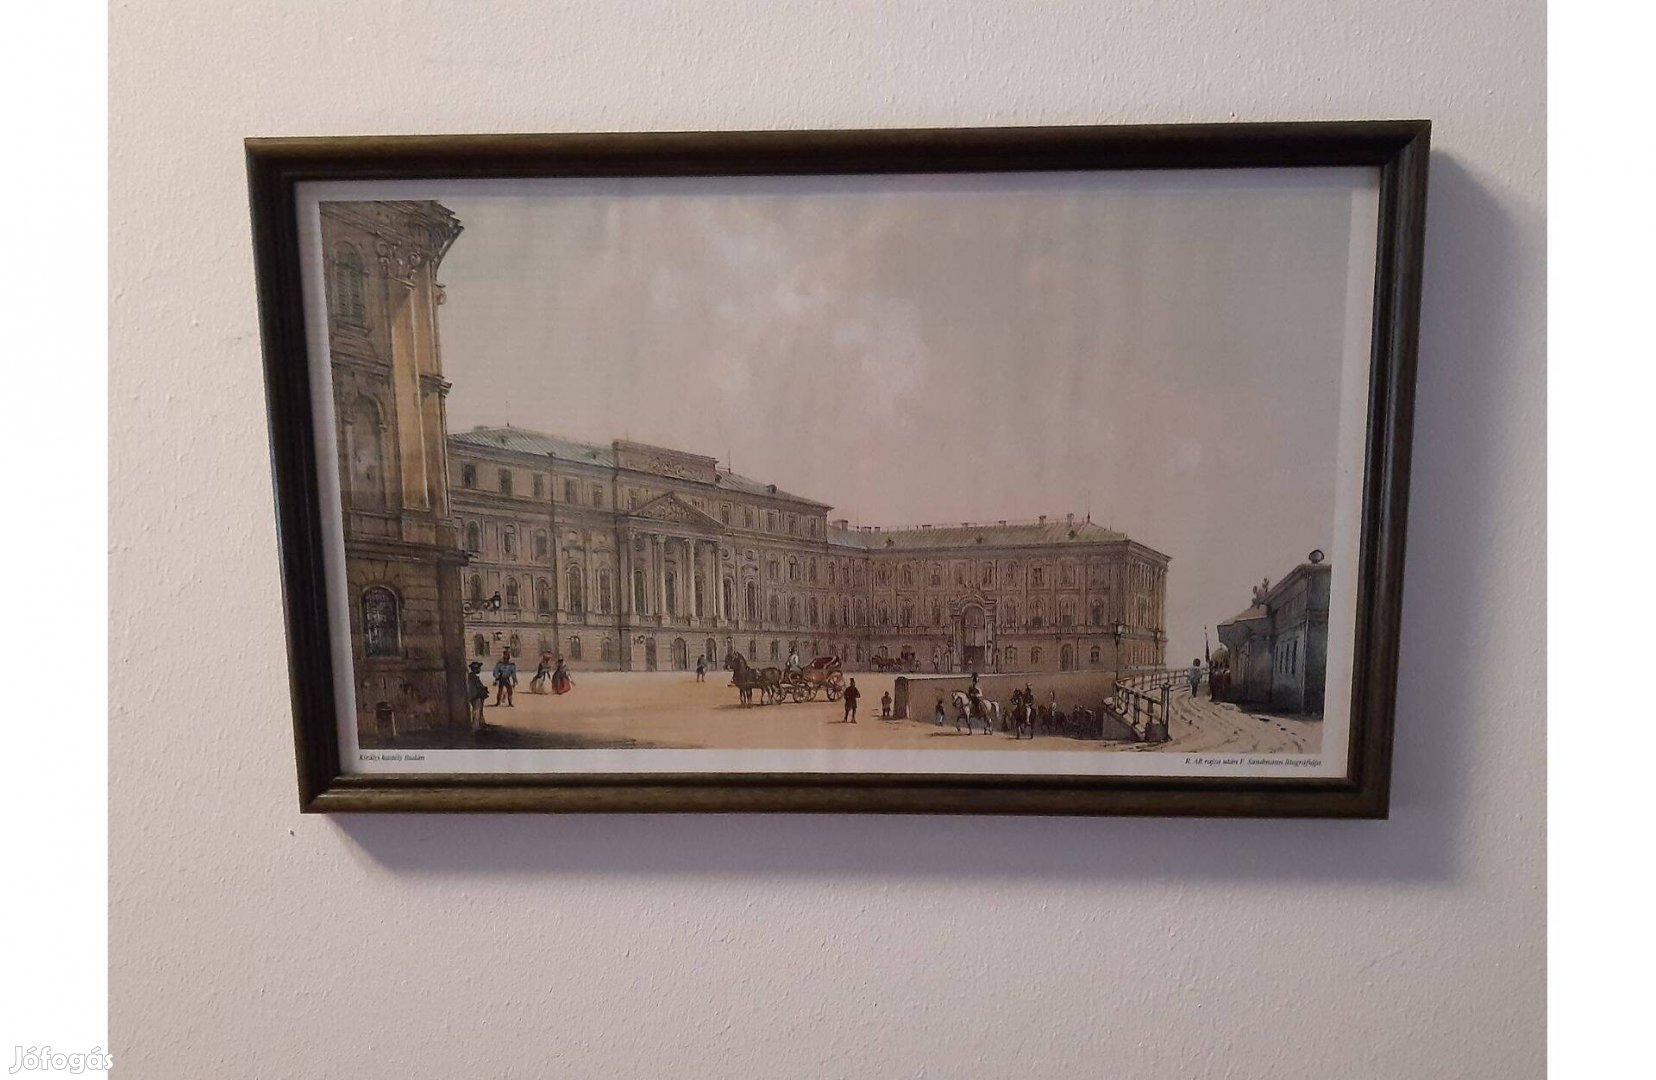 Képnyomat a 19. századi Budapestről